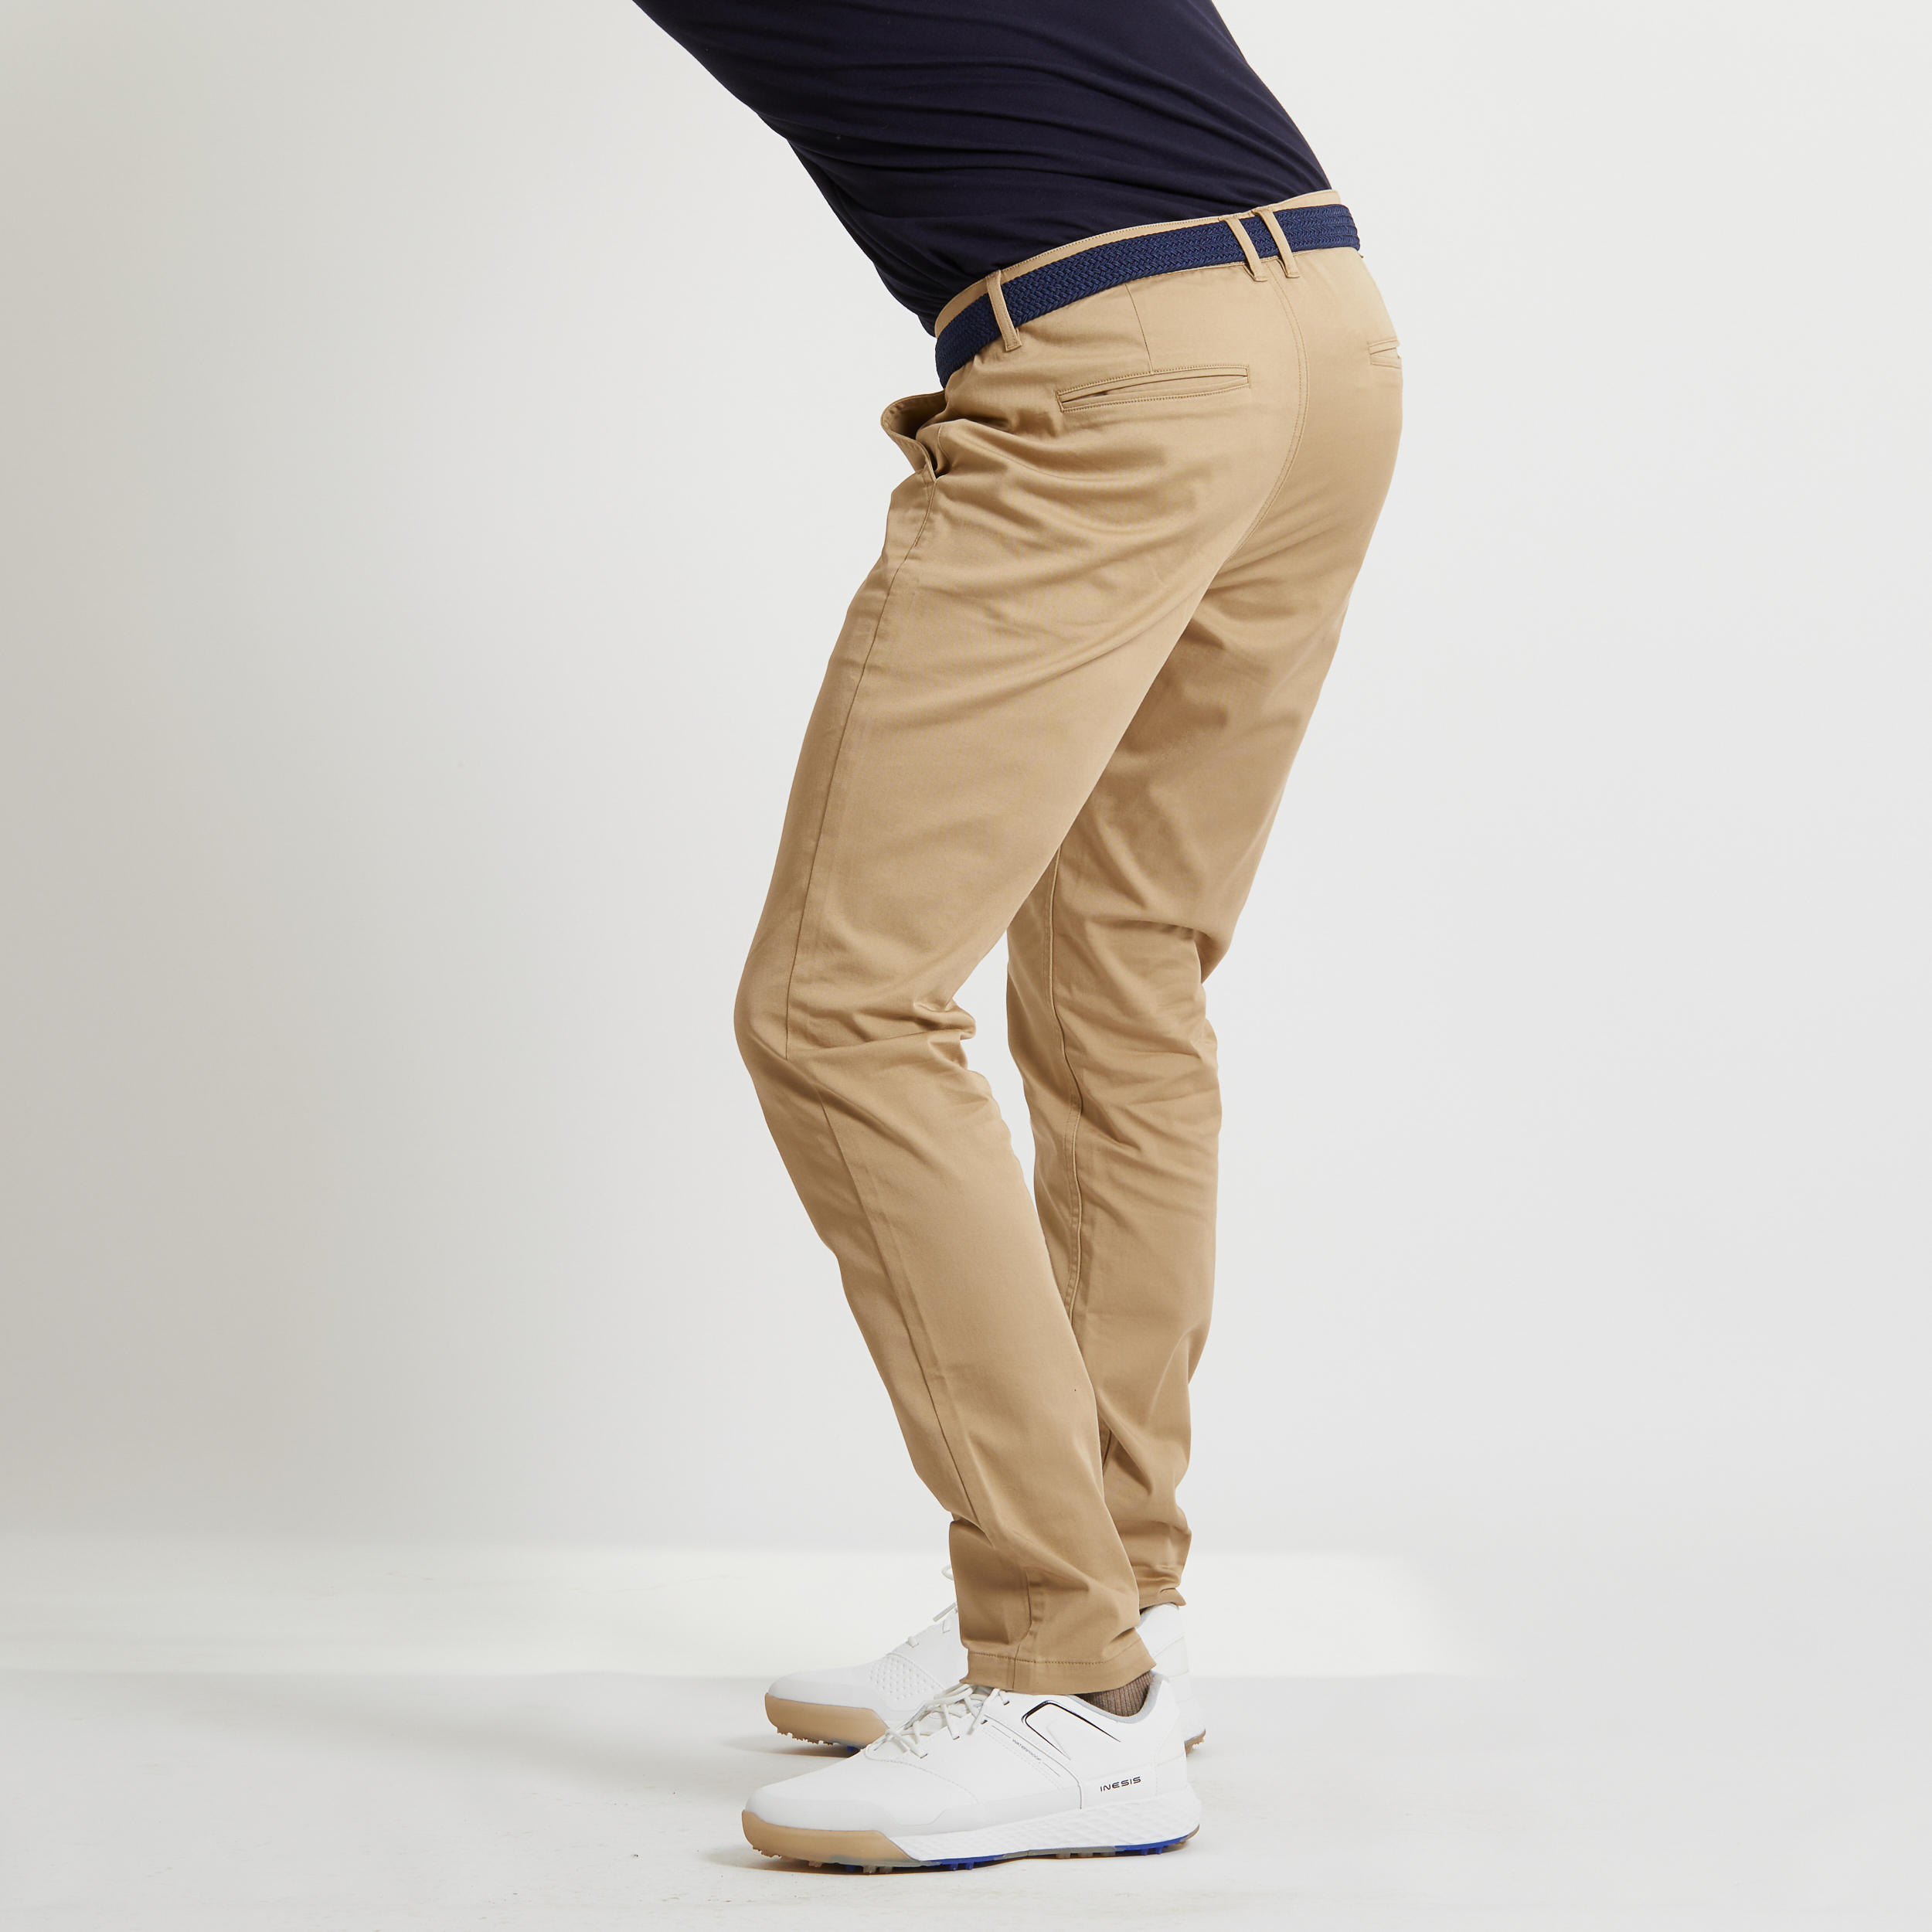 Men Golf Trousers MW500 Khaki